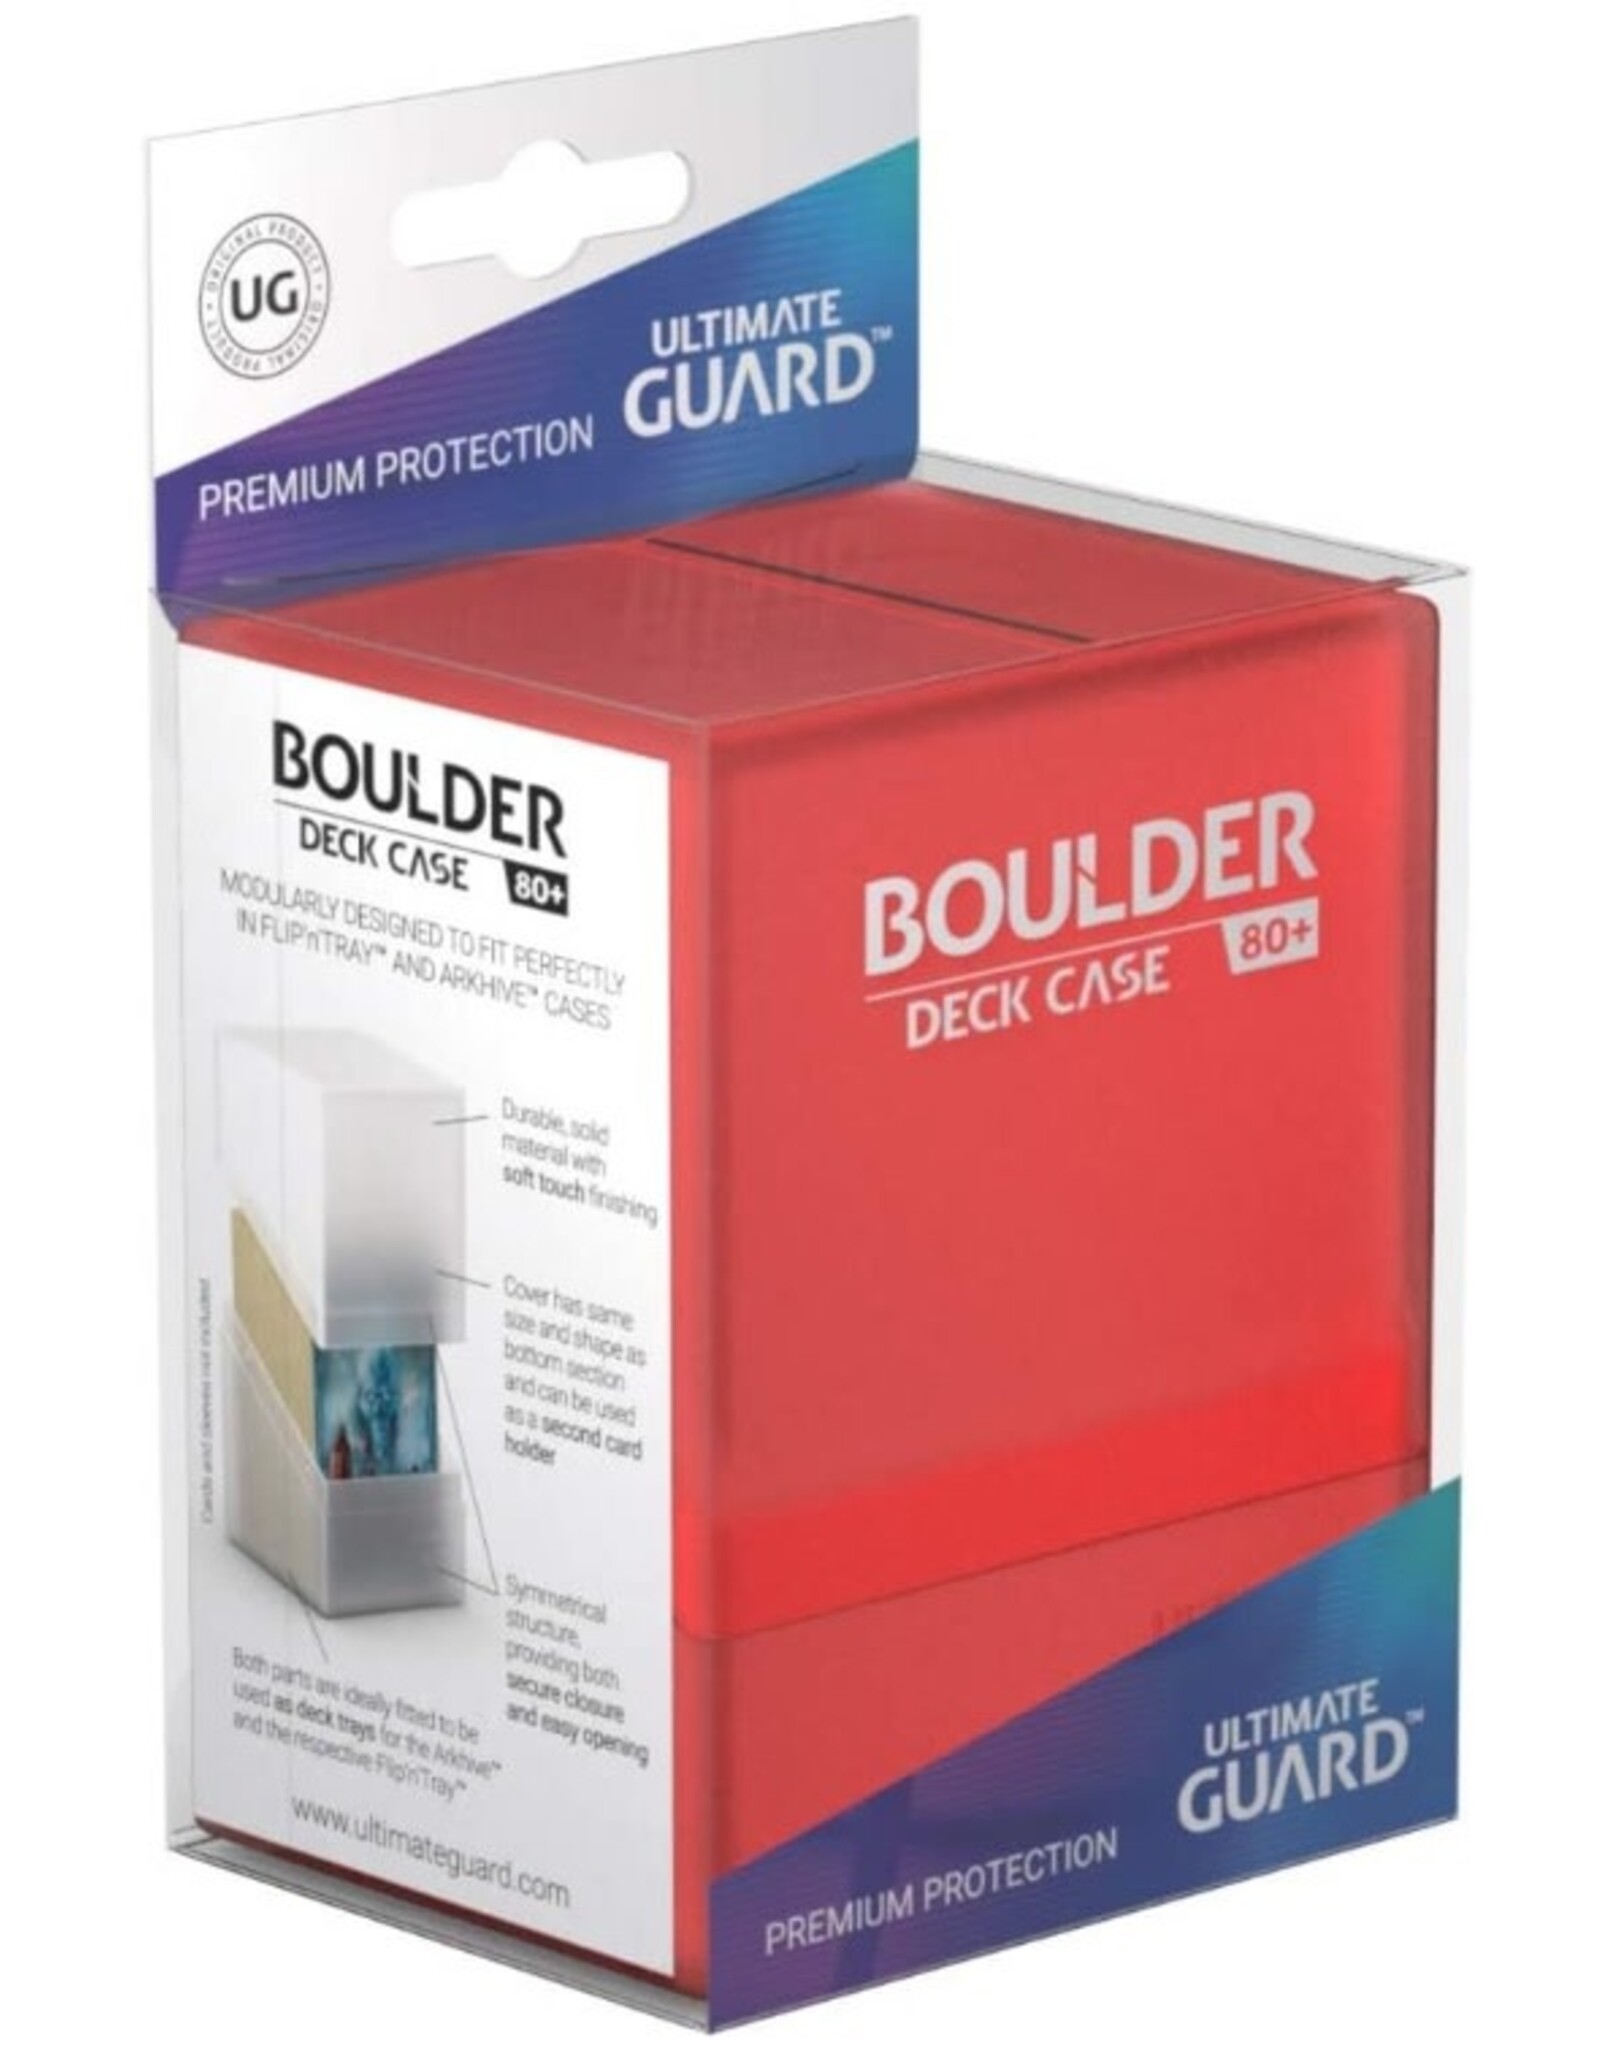 Ultimate Guard Boulder Deck Case (80+, Ruby)